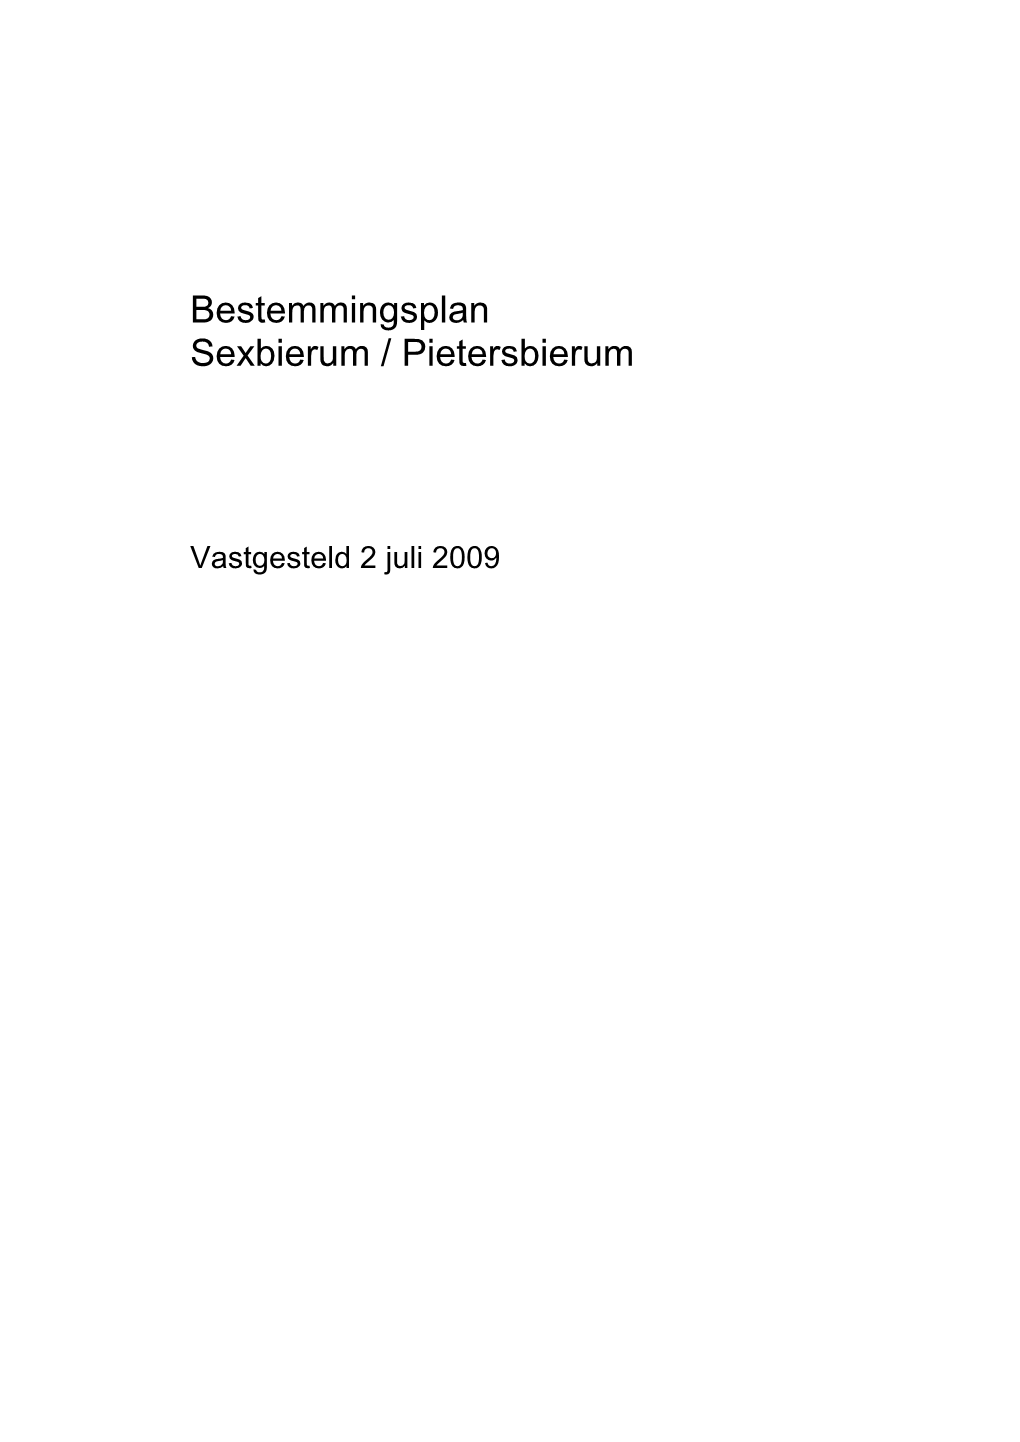 Toelichting Bestemmingsplan Sexbierum / Pietersbierum